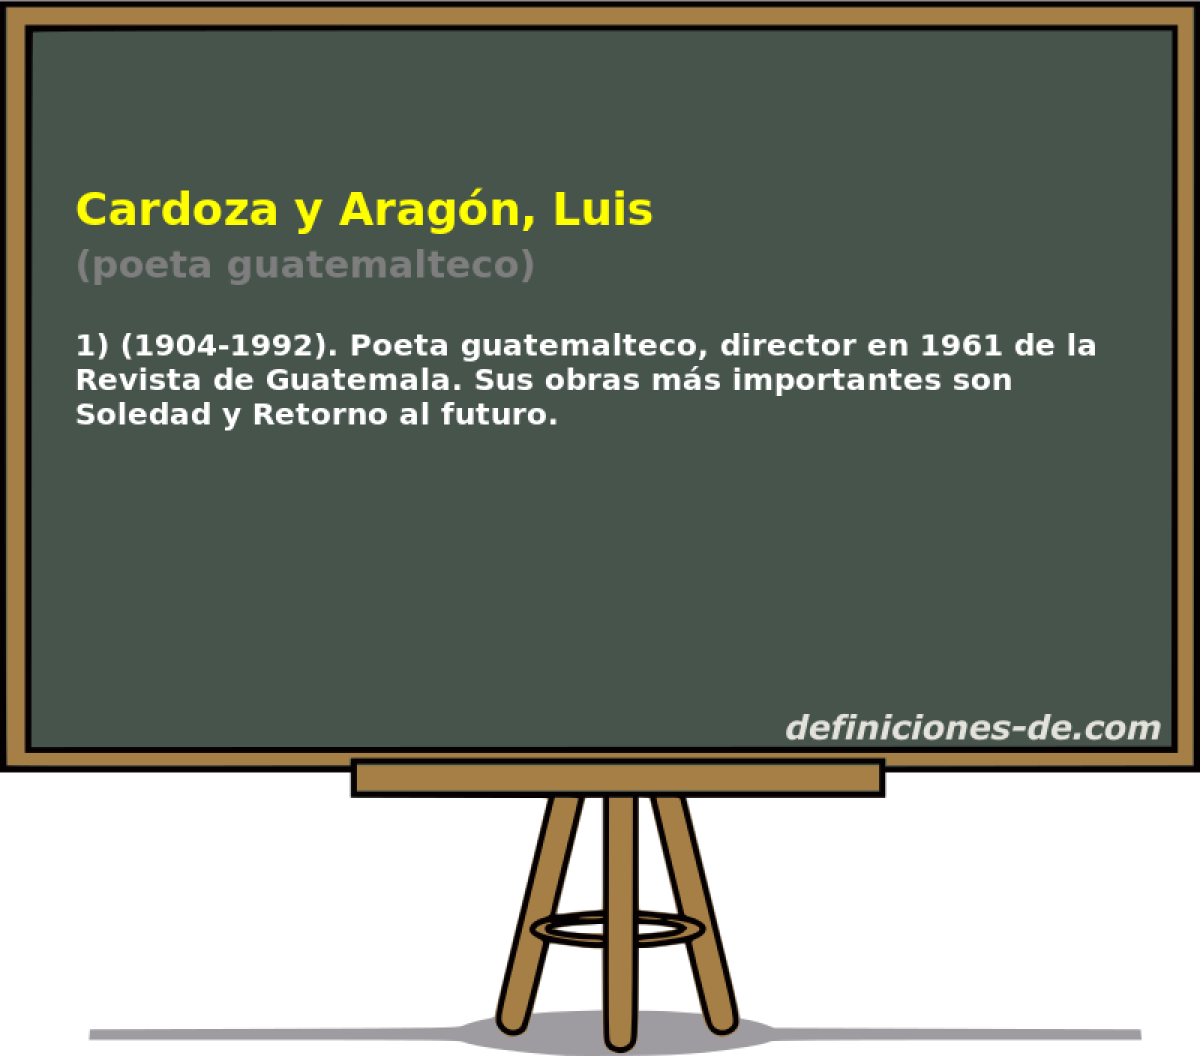 Cardoza y Aragn, Luis (poeta guatemalteco)